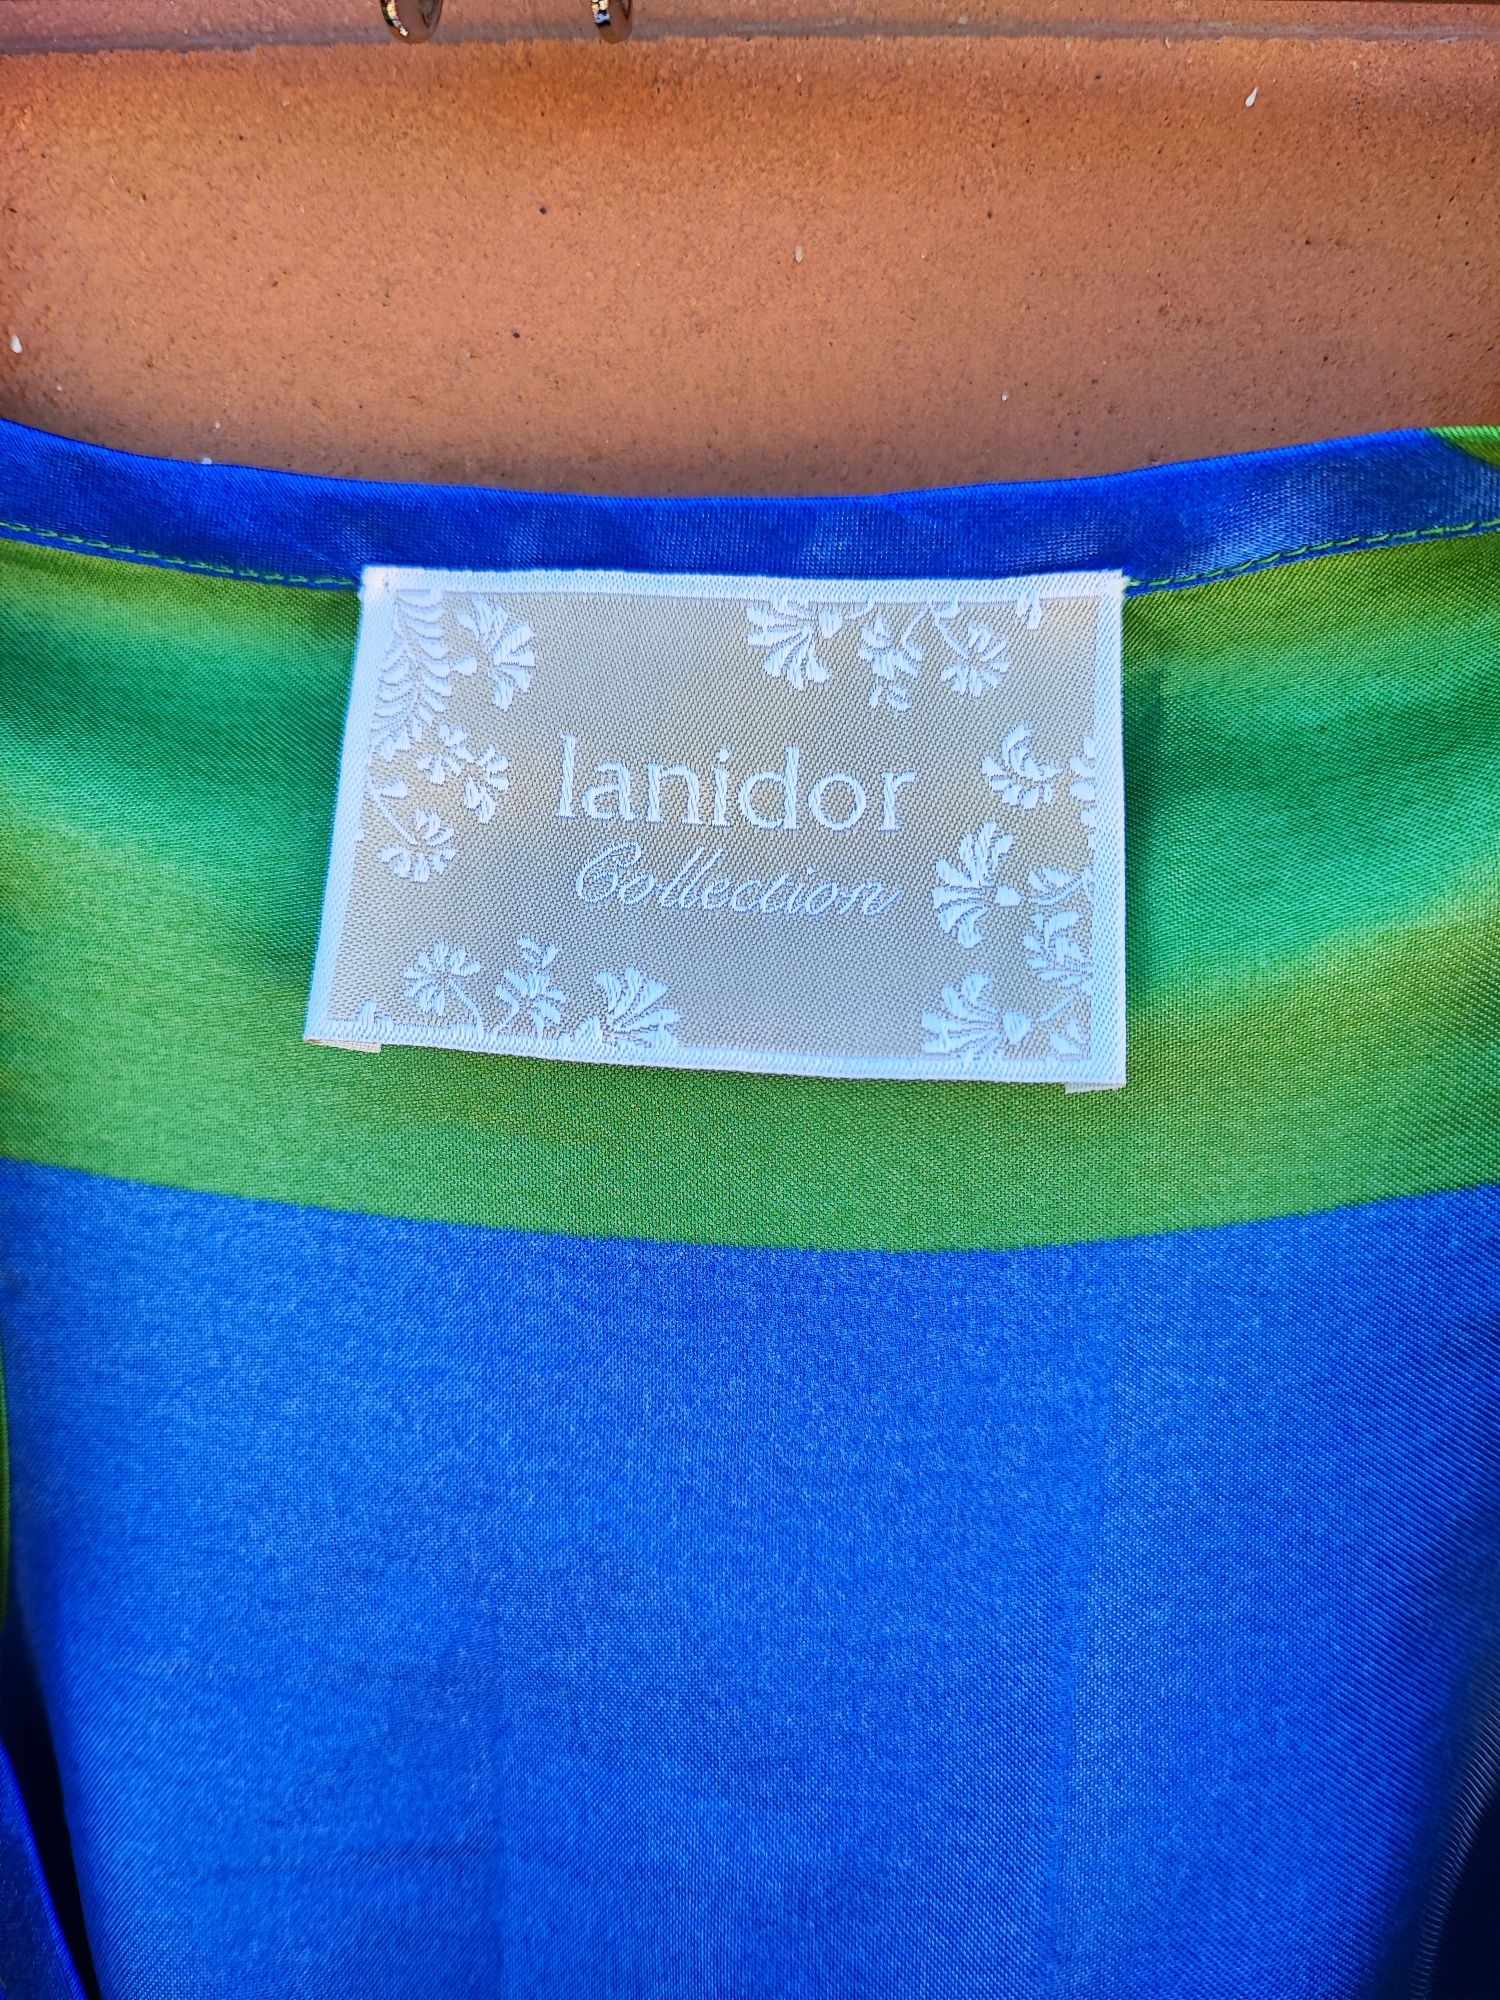 Vestido comprido Lanidor